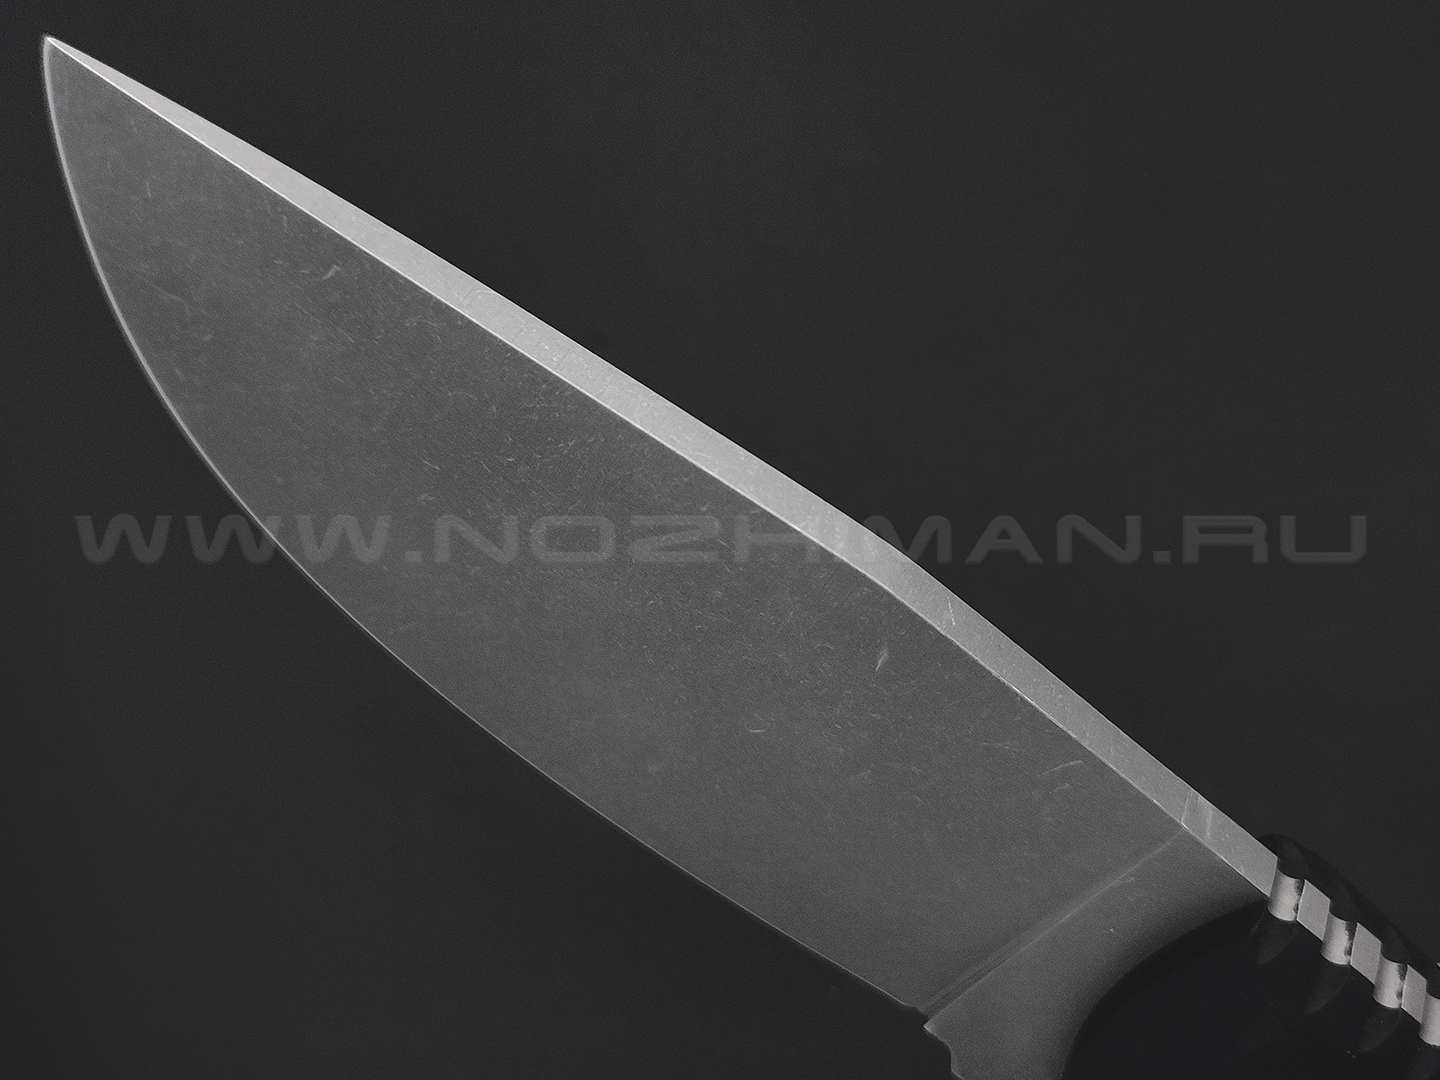 Волчий Век нож Fantocci сталь N690 WA stonewash, рукоять G10 black